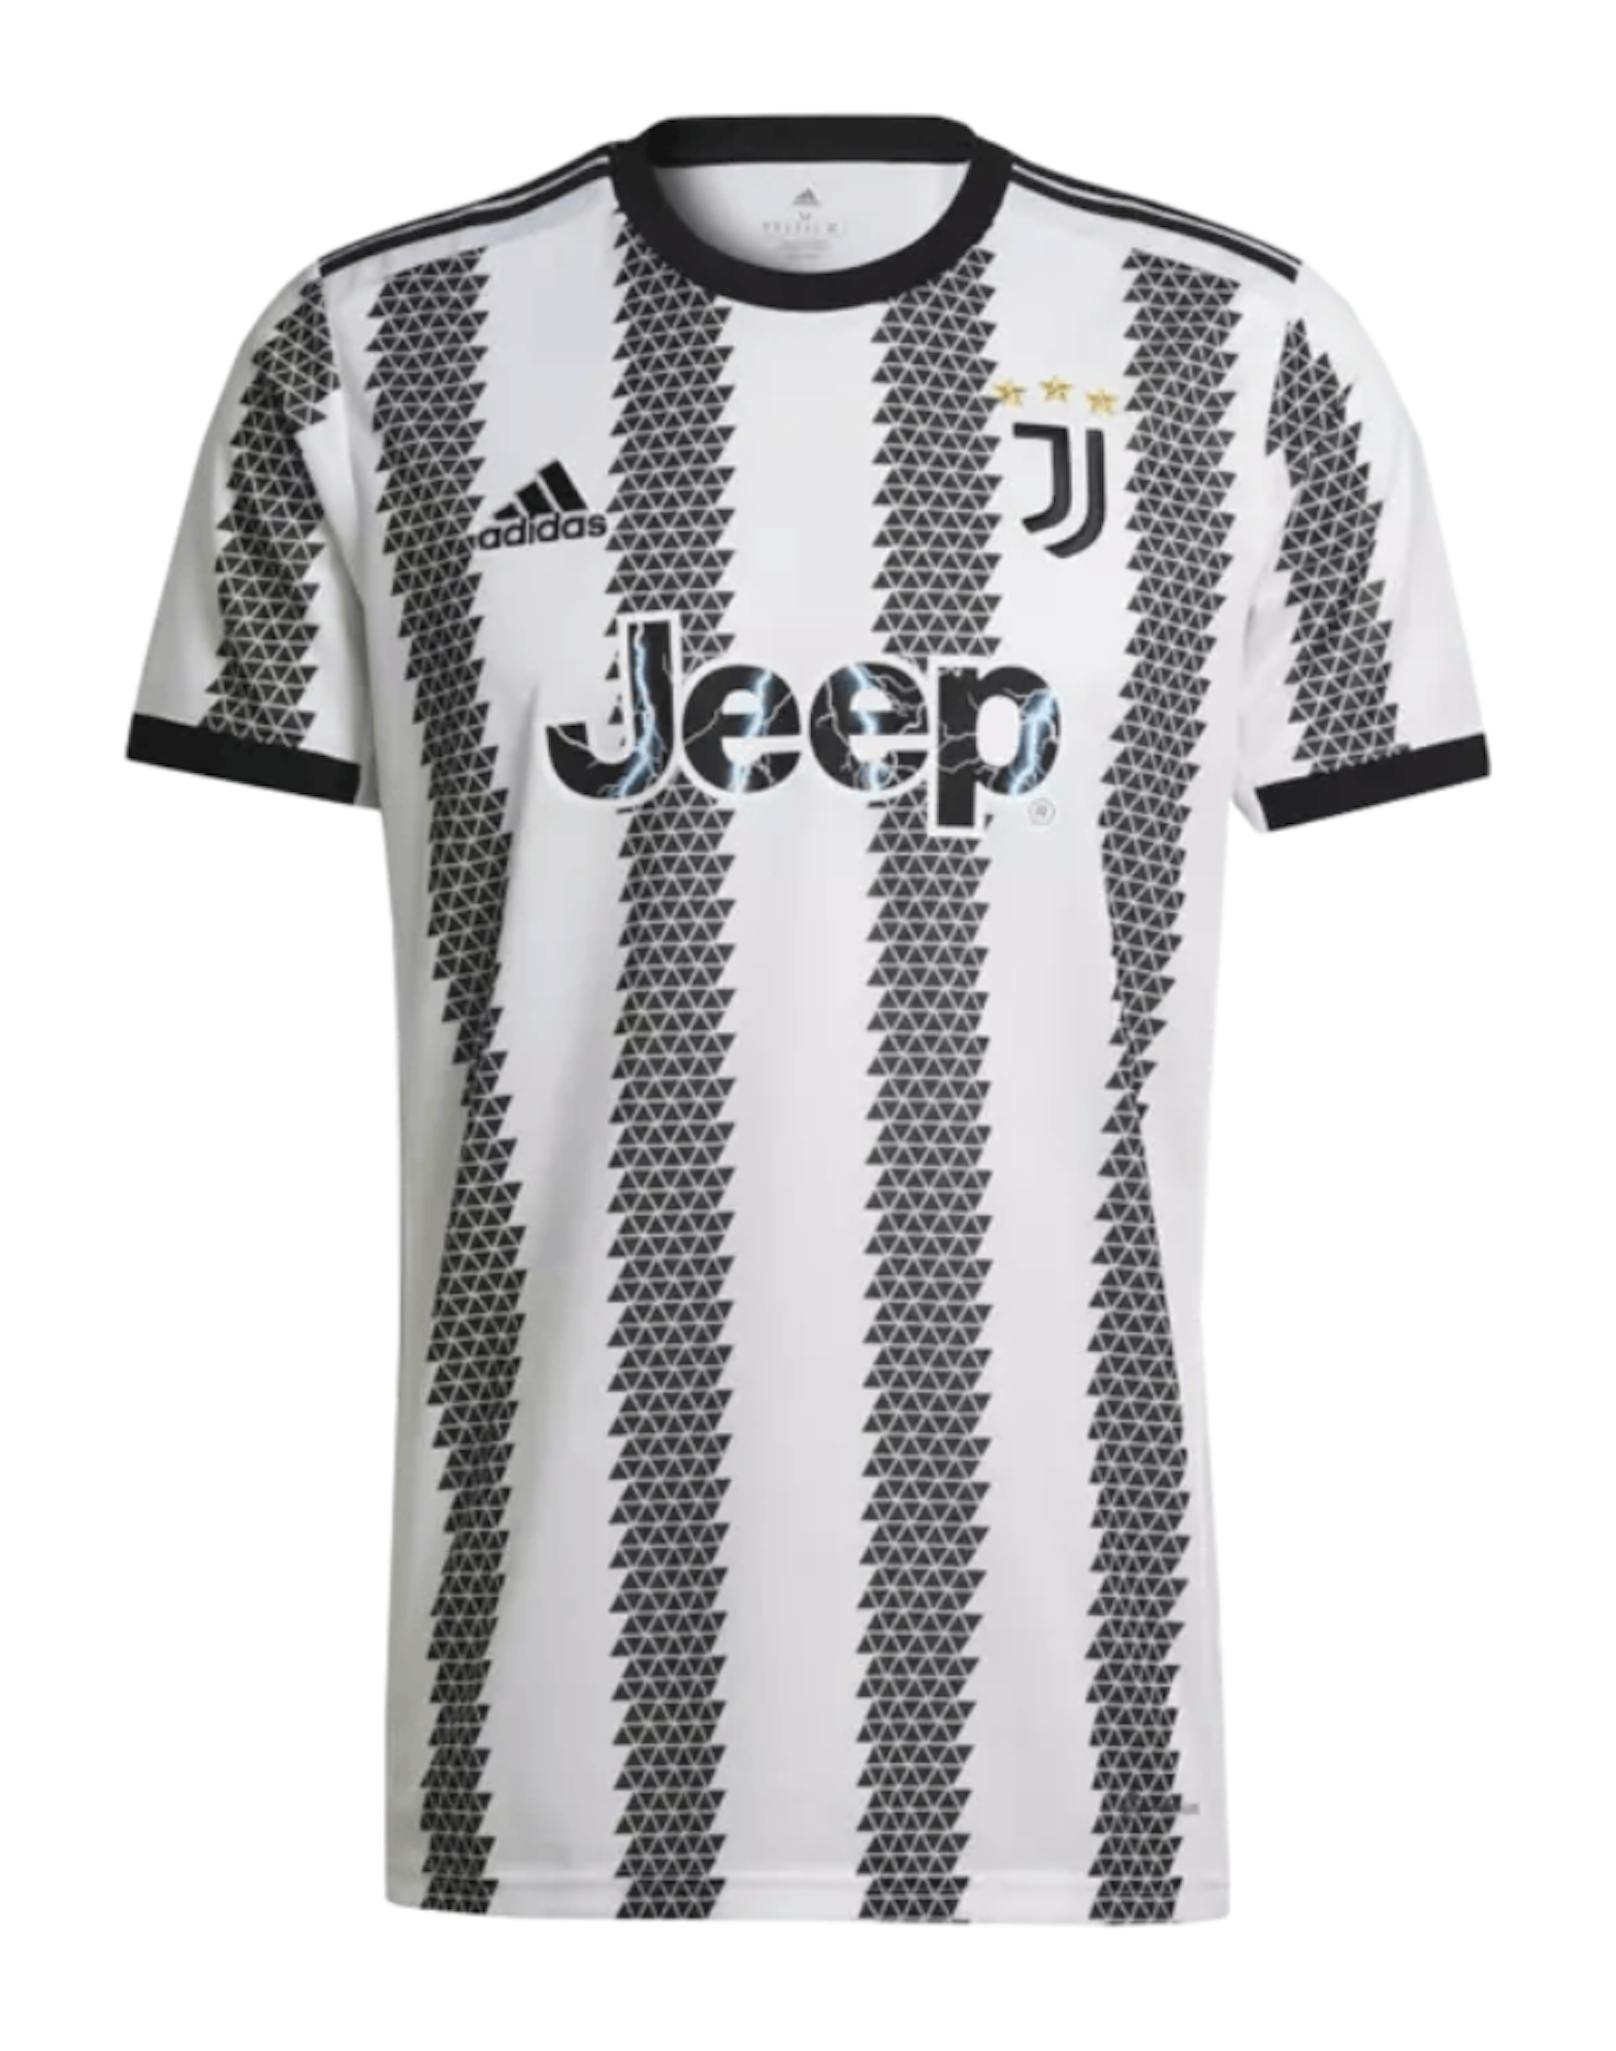 Juventus Turin wurde dieses Jahr bei den schwarzen Streifen besonders kreativ.